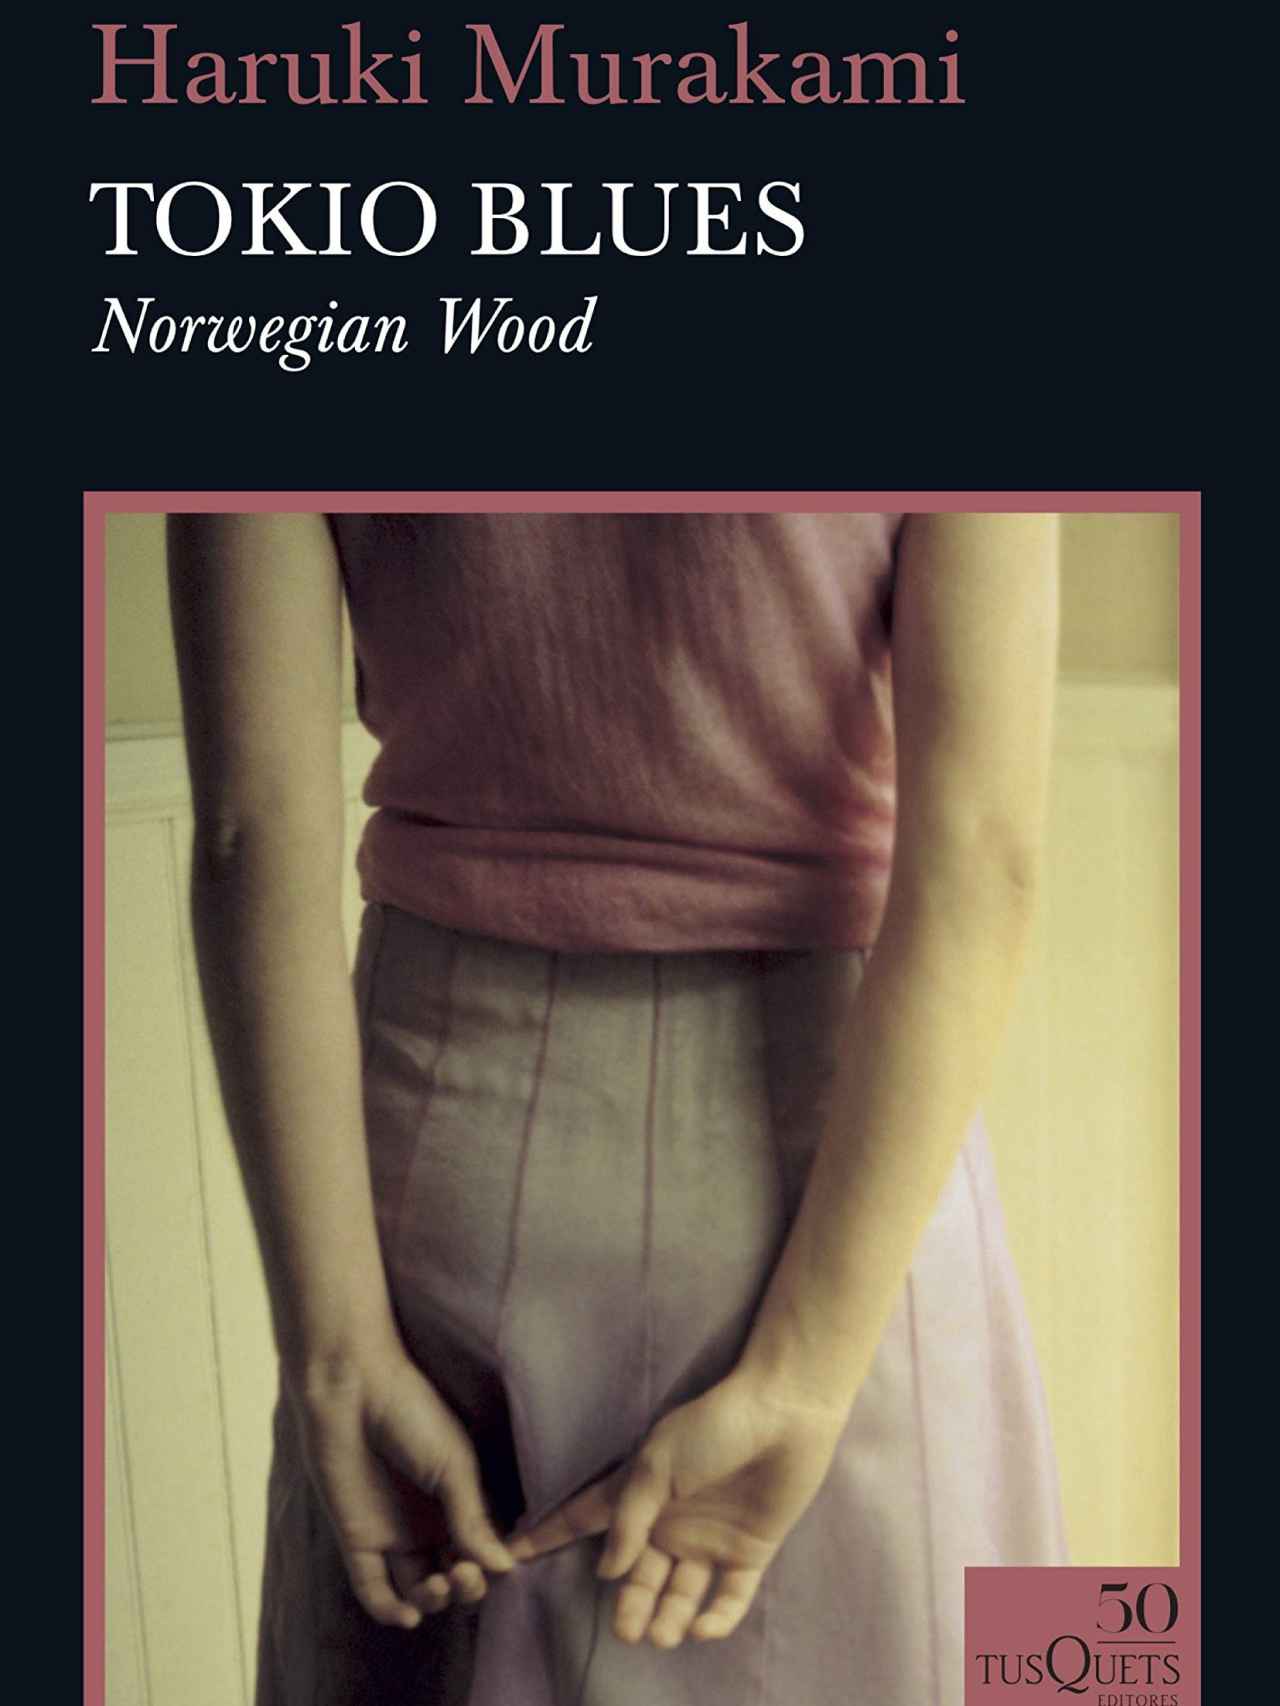 Portada de la edición de 'Tokio Blues' en el 50 aniversario de su publicación.